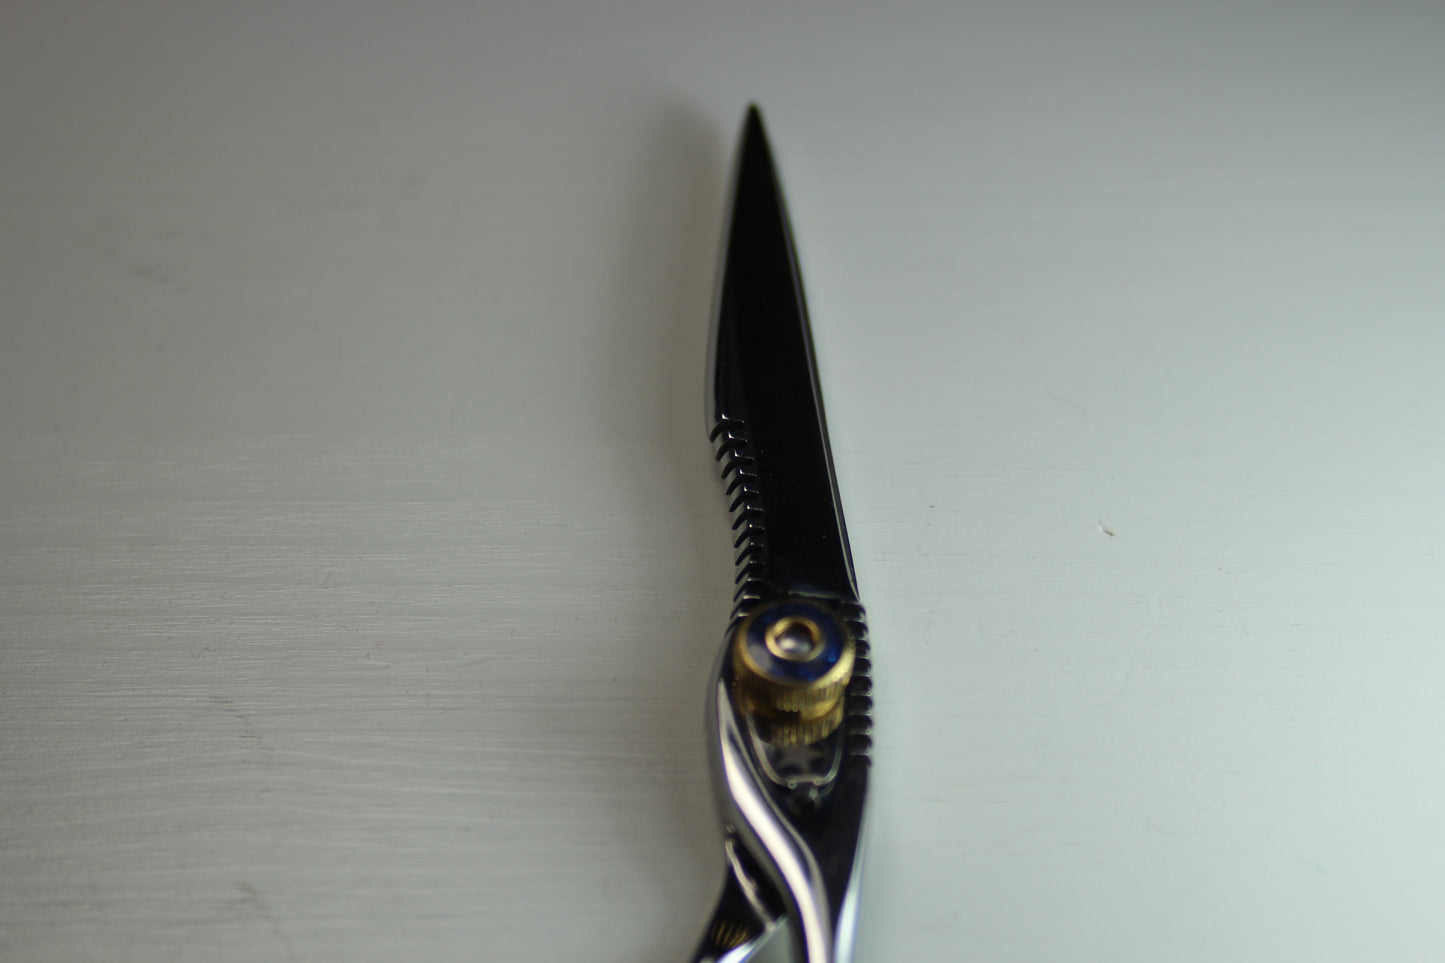 Sternsteiger Snyper hair scissors 7.0 inch